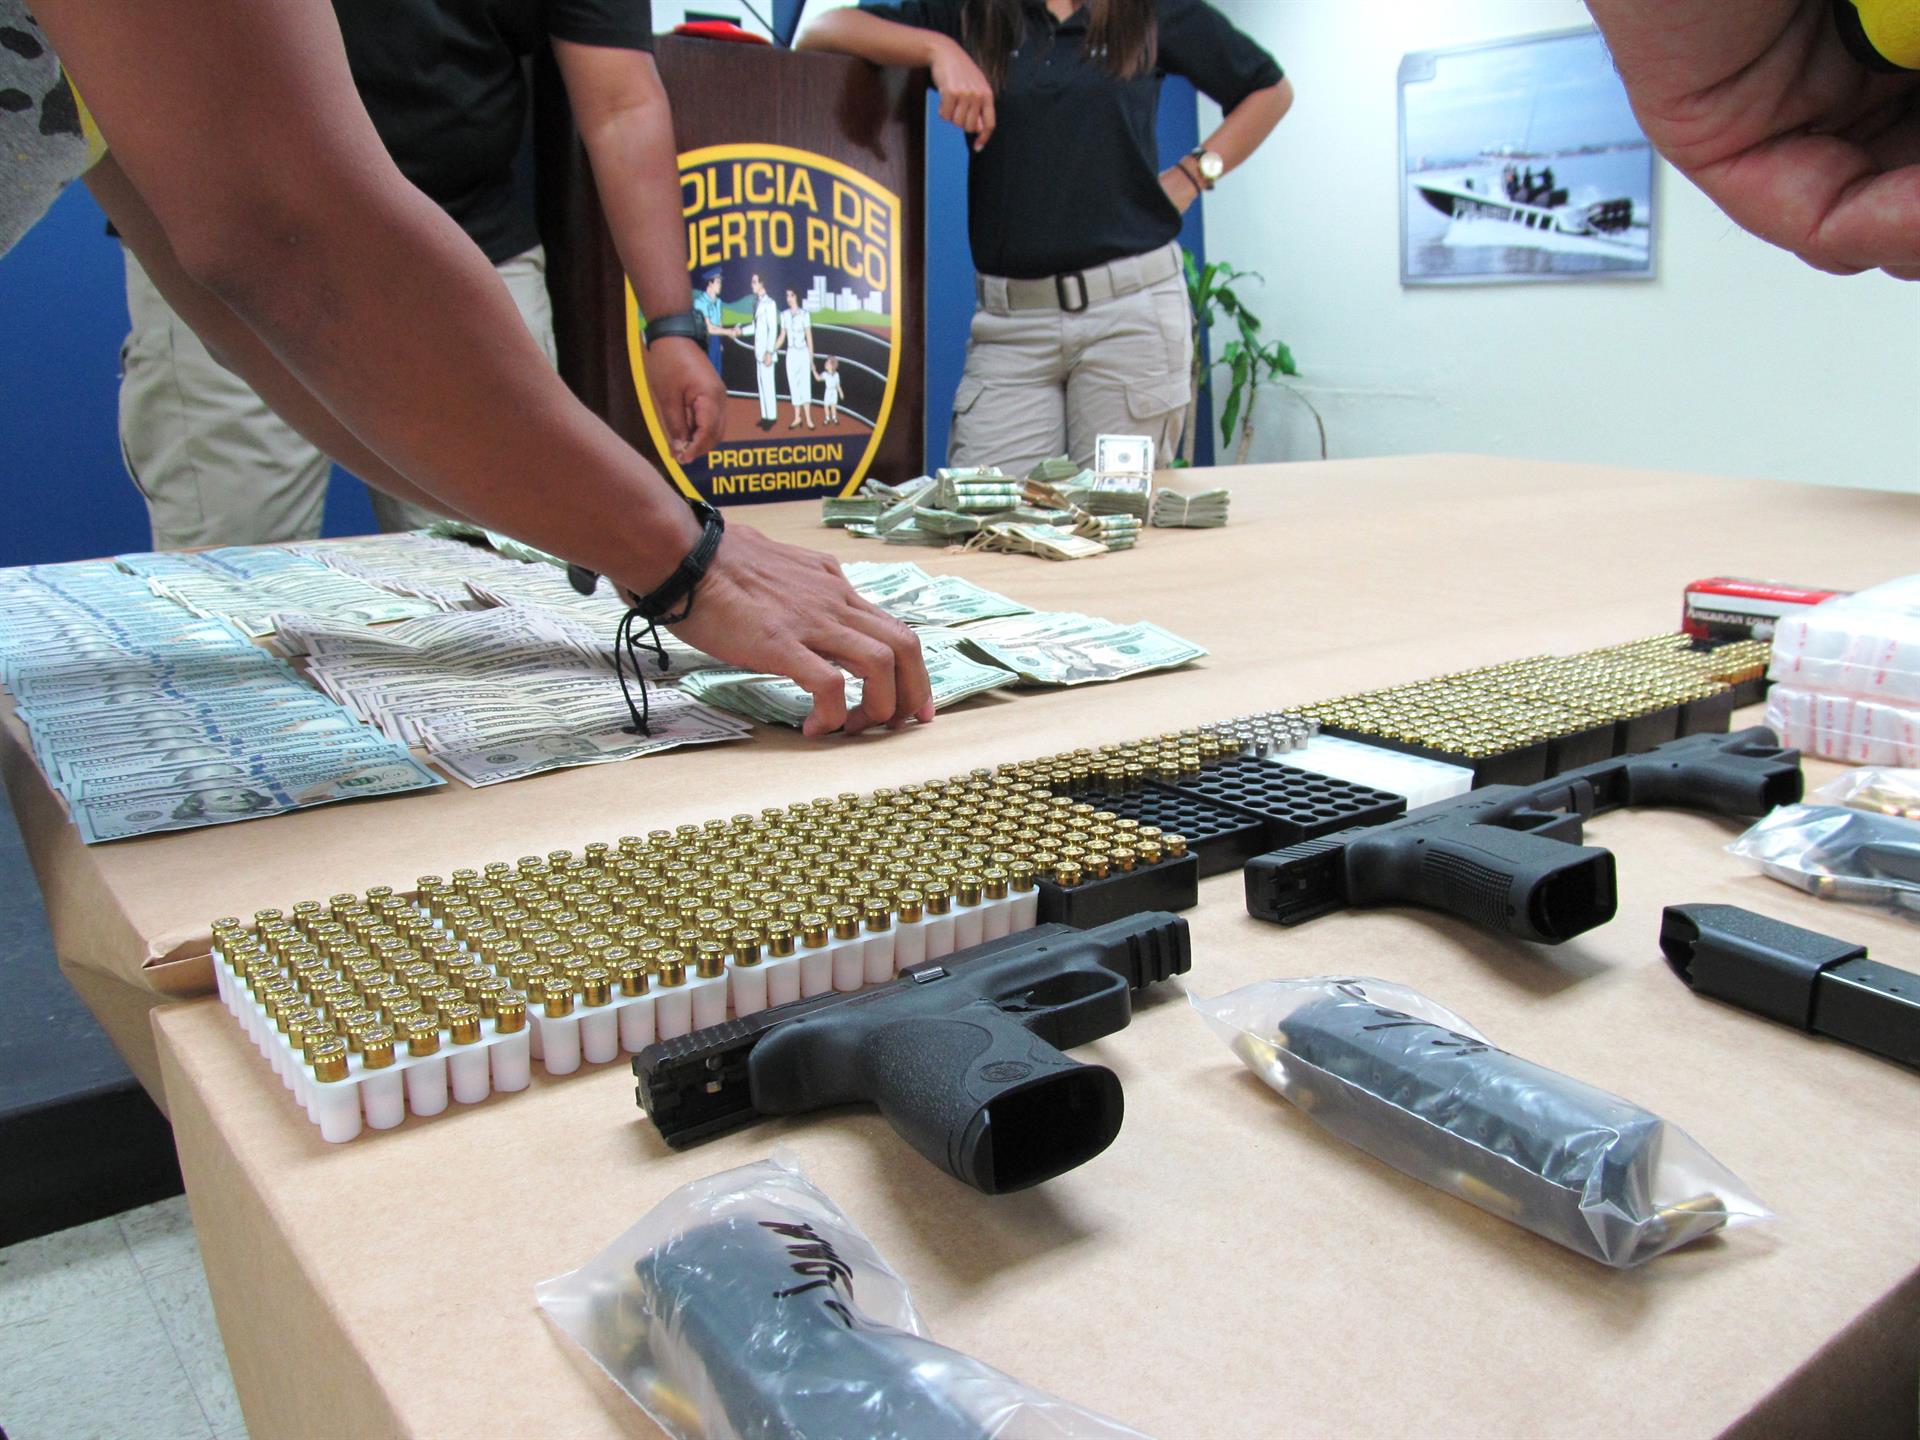 Imagen de archivo que muestra el detalle de algunas armas, dinero y drogas incautadas por la Policía de Puerto rico. EFE/Jorge Muñiz
